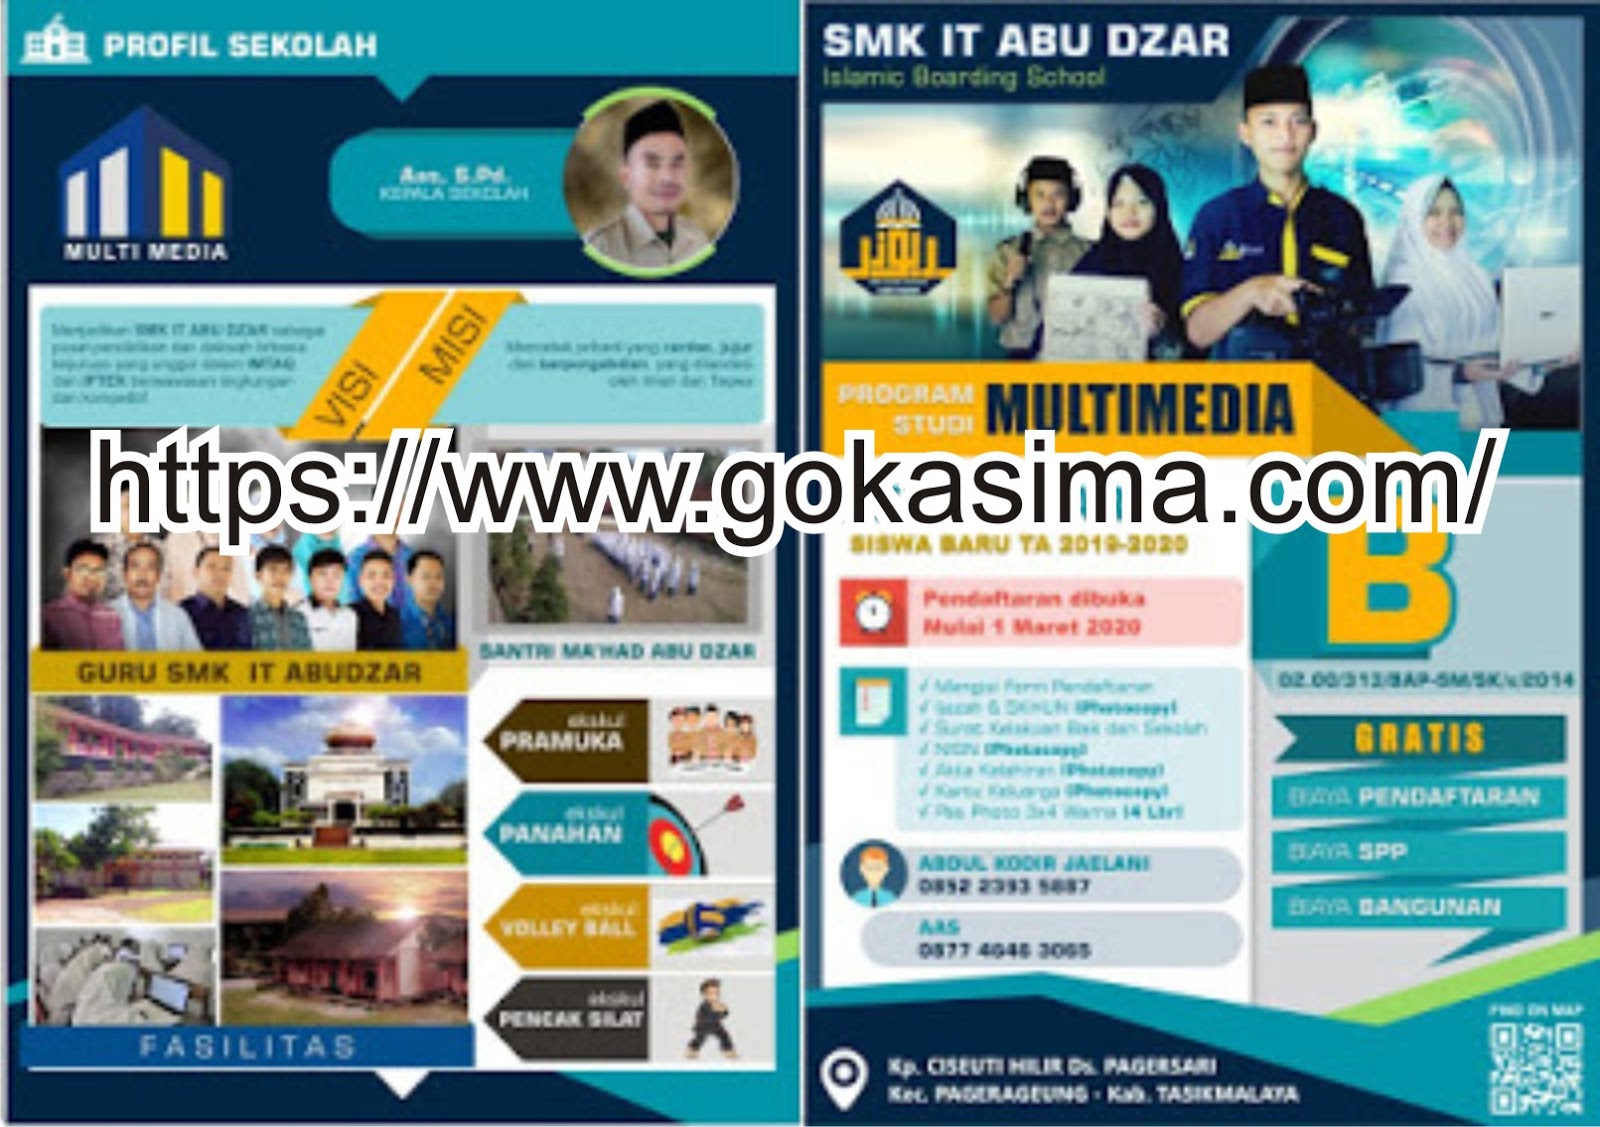 Download Contoh Brosur Sekolah SMK Format CDR - KARYAKU